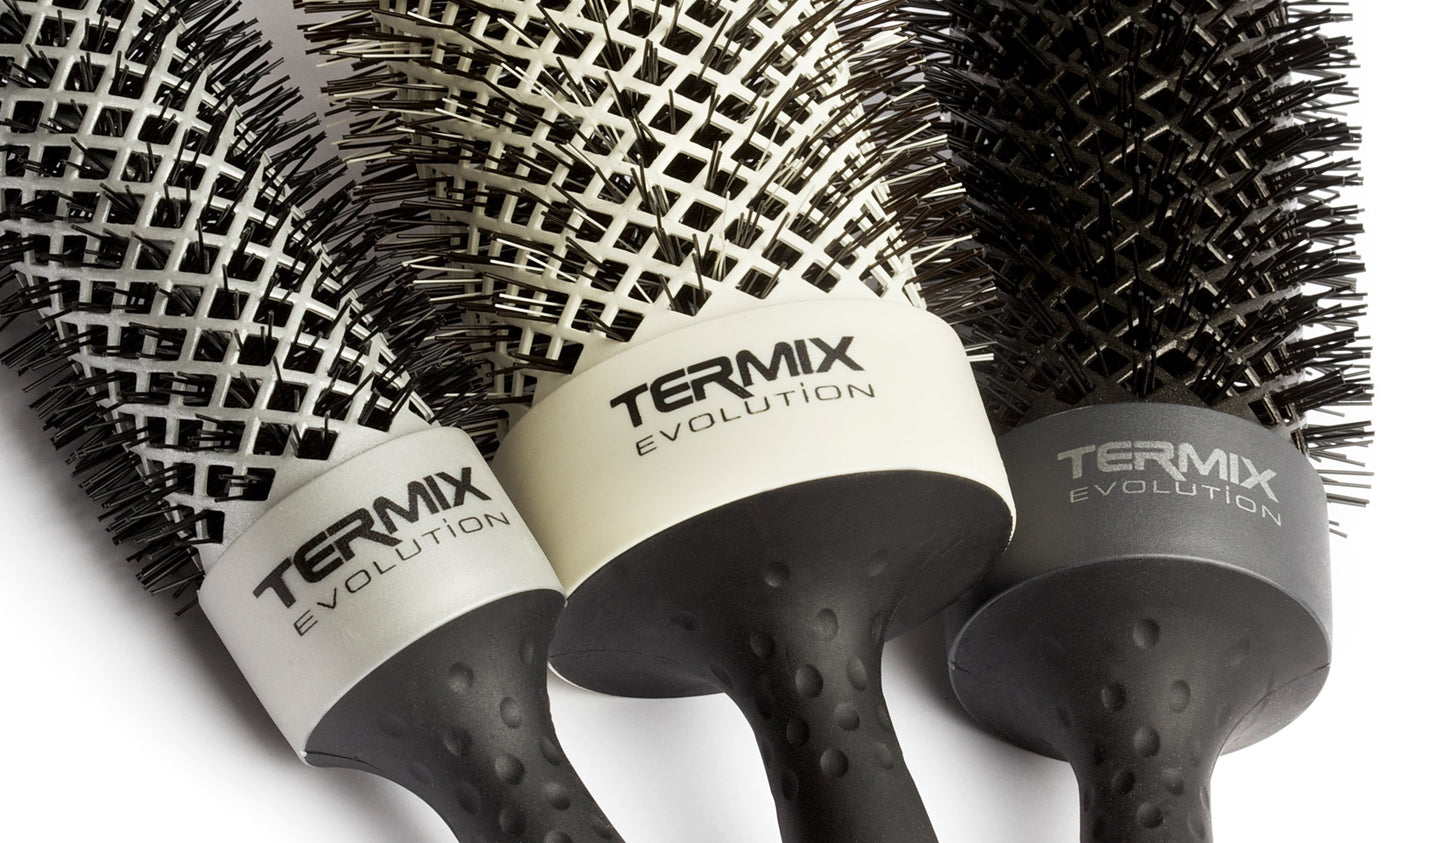 Termix Evolution Styling Brush 17mm BASIC for Normal Hair